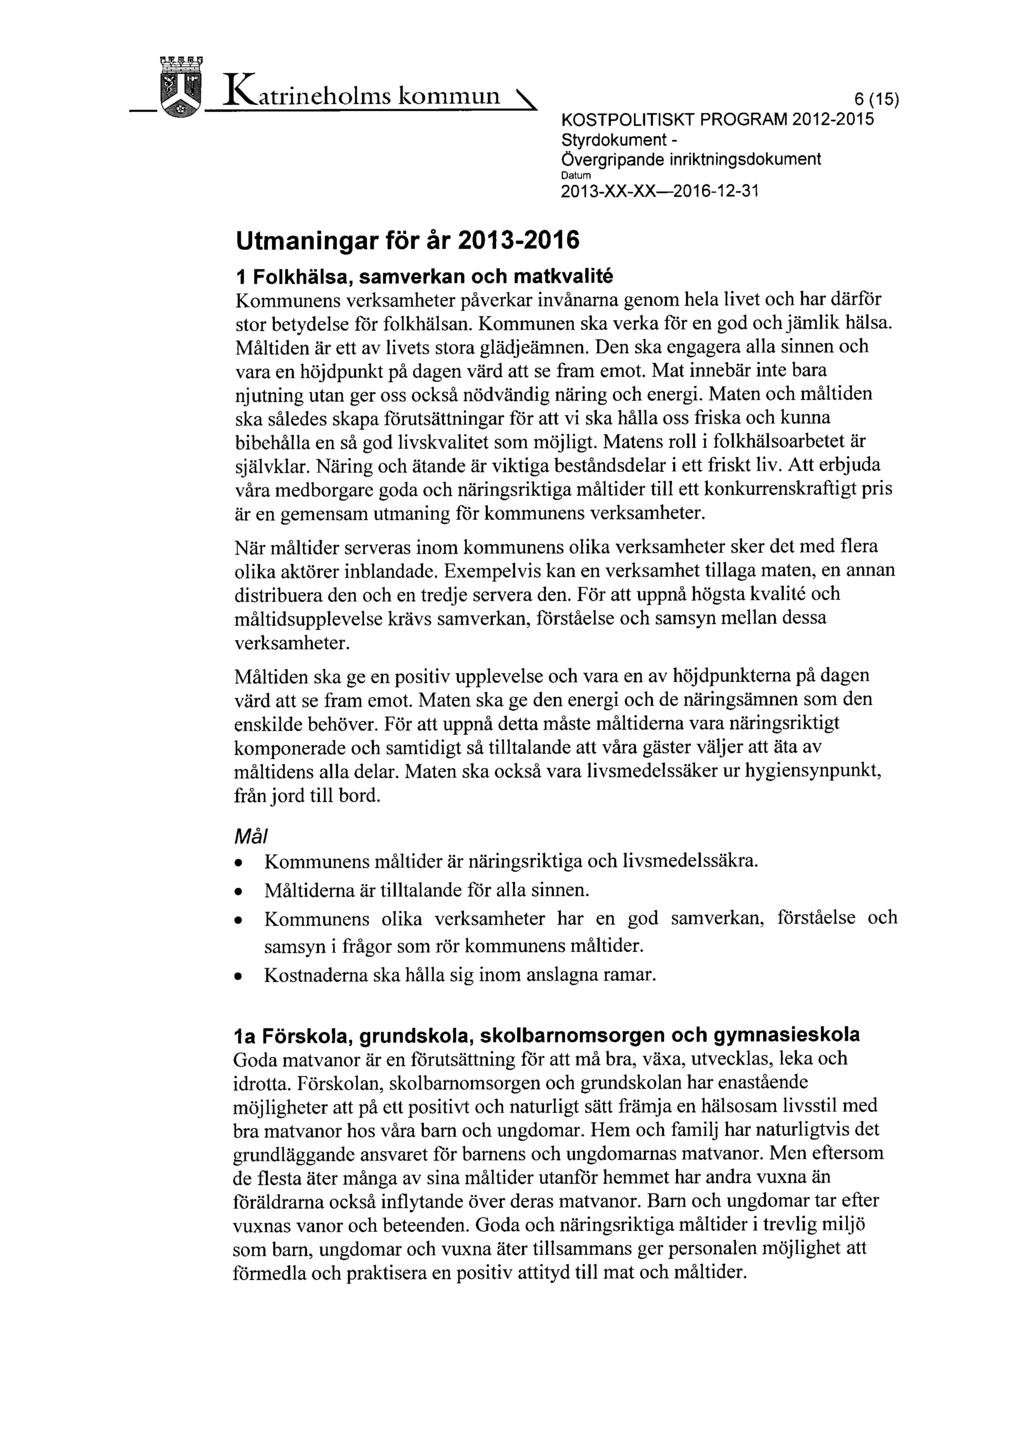 ~~ ~ ~ I~atrineholms kommun \ 1,r 6 (15) KOSTPOLITISKT PROGRAM 2012-2015 Styrdokument - Övergripande inriktningsdokument 2013-XX-XX-2016-12-31 Utmaningar förår 2013-2016 1 Folkhälsa, samverkan och